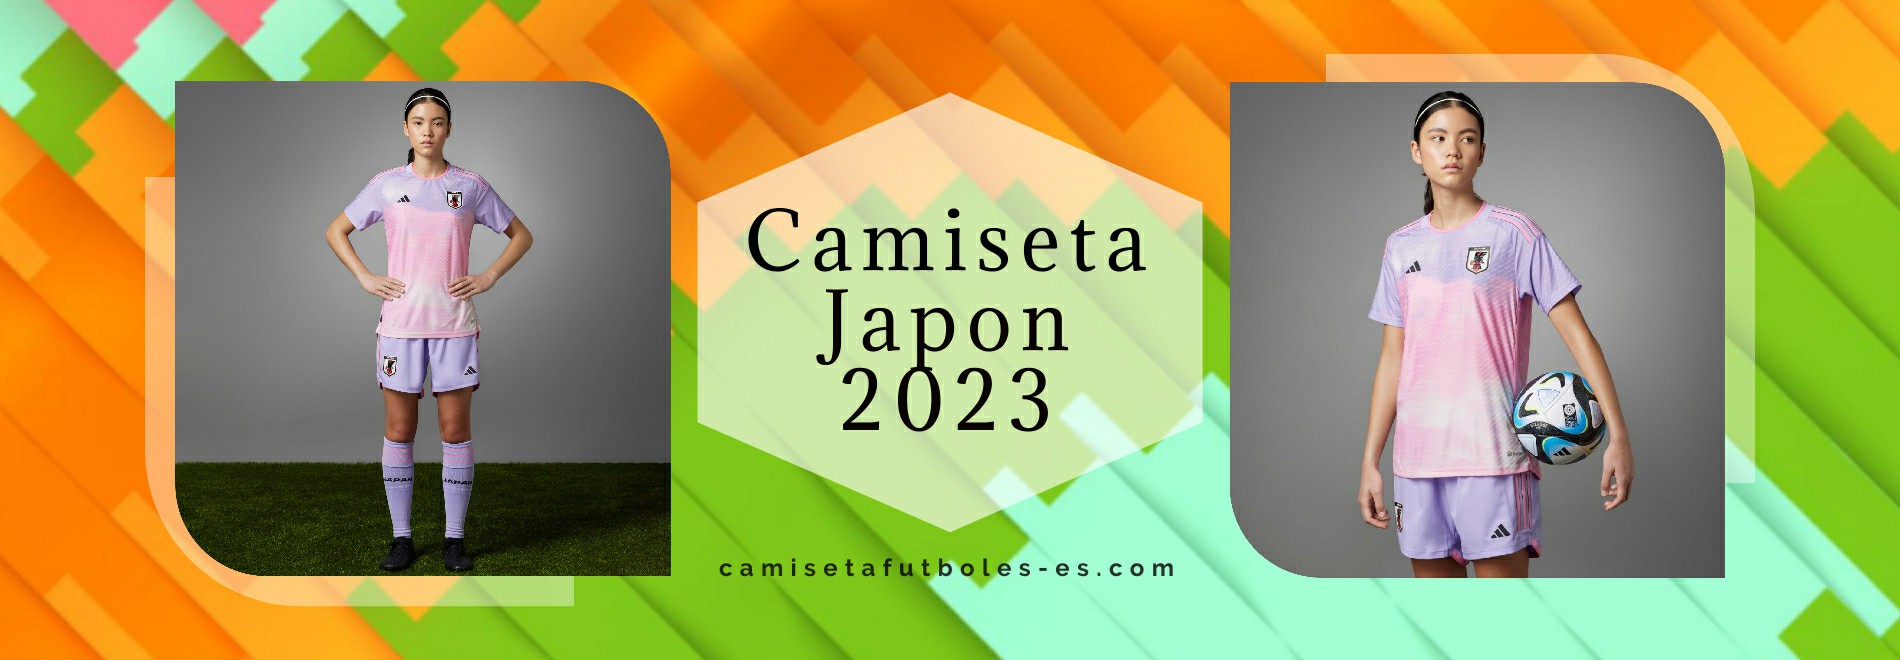 Camiseta Japon 2023-2024